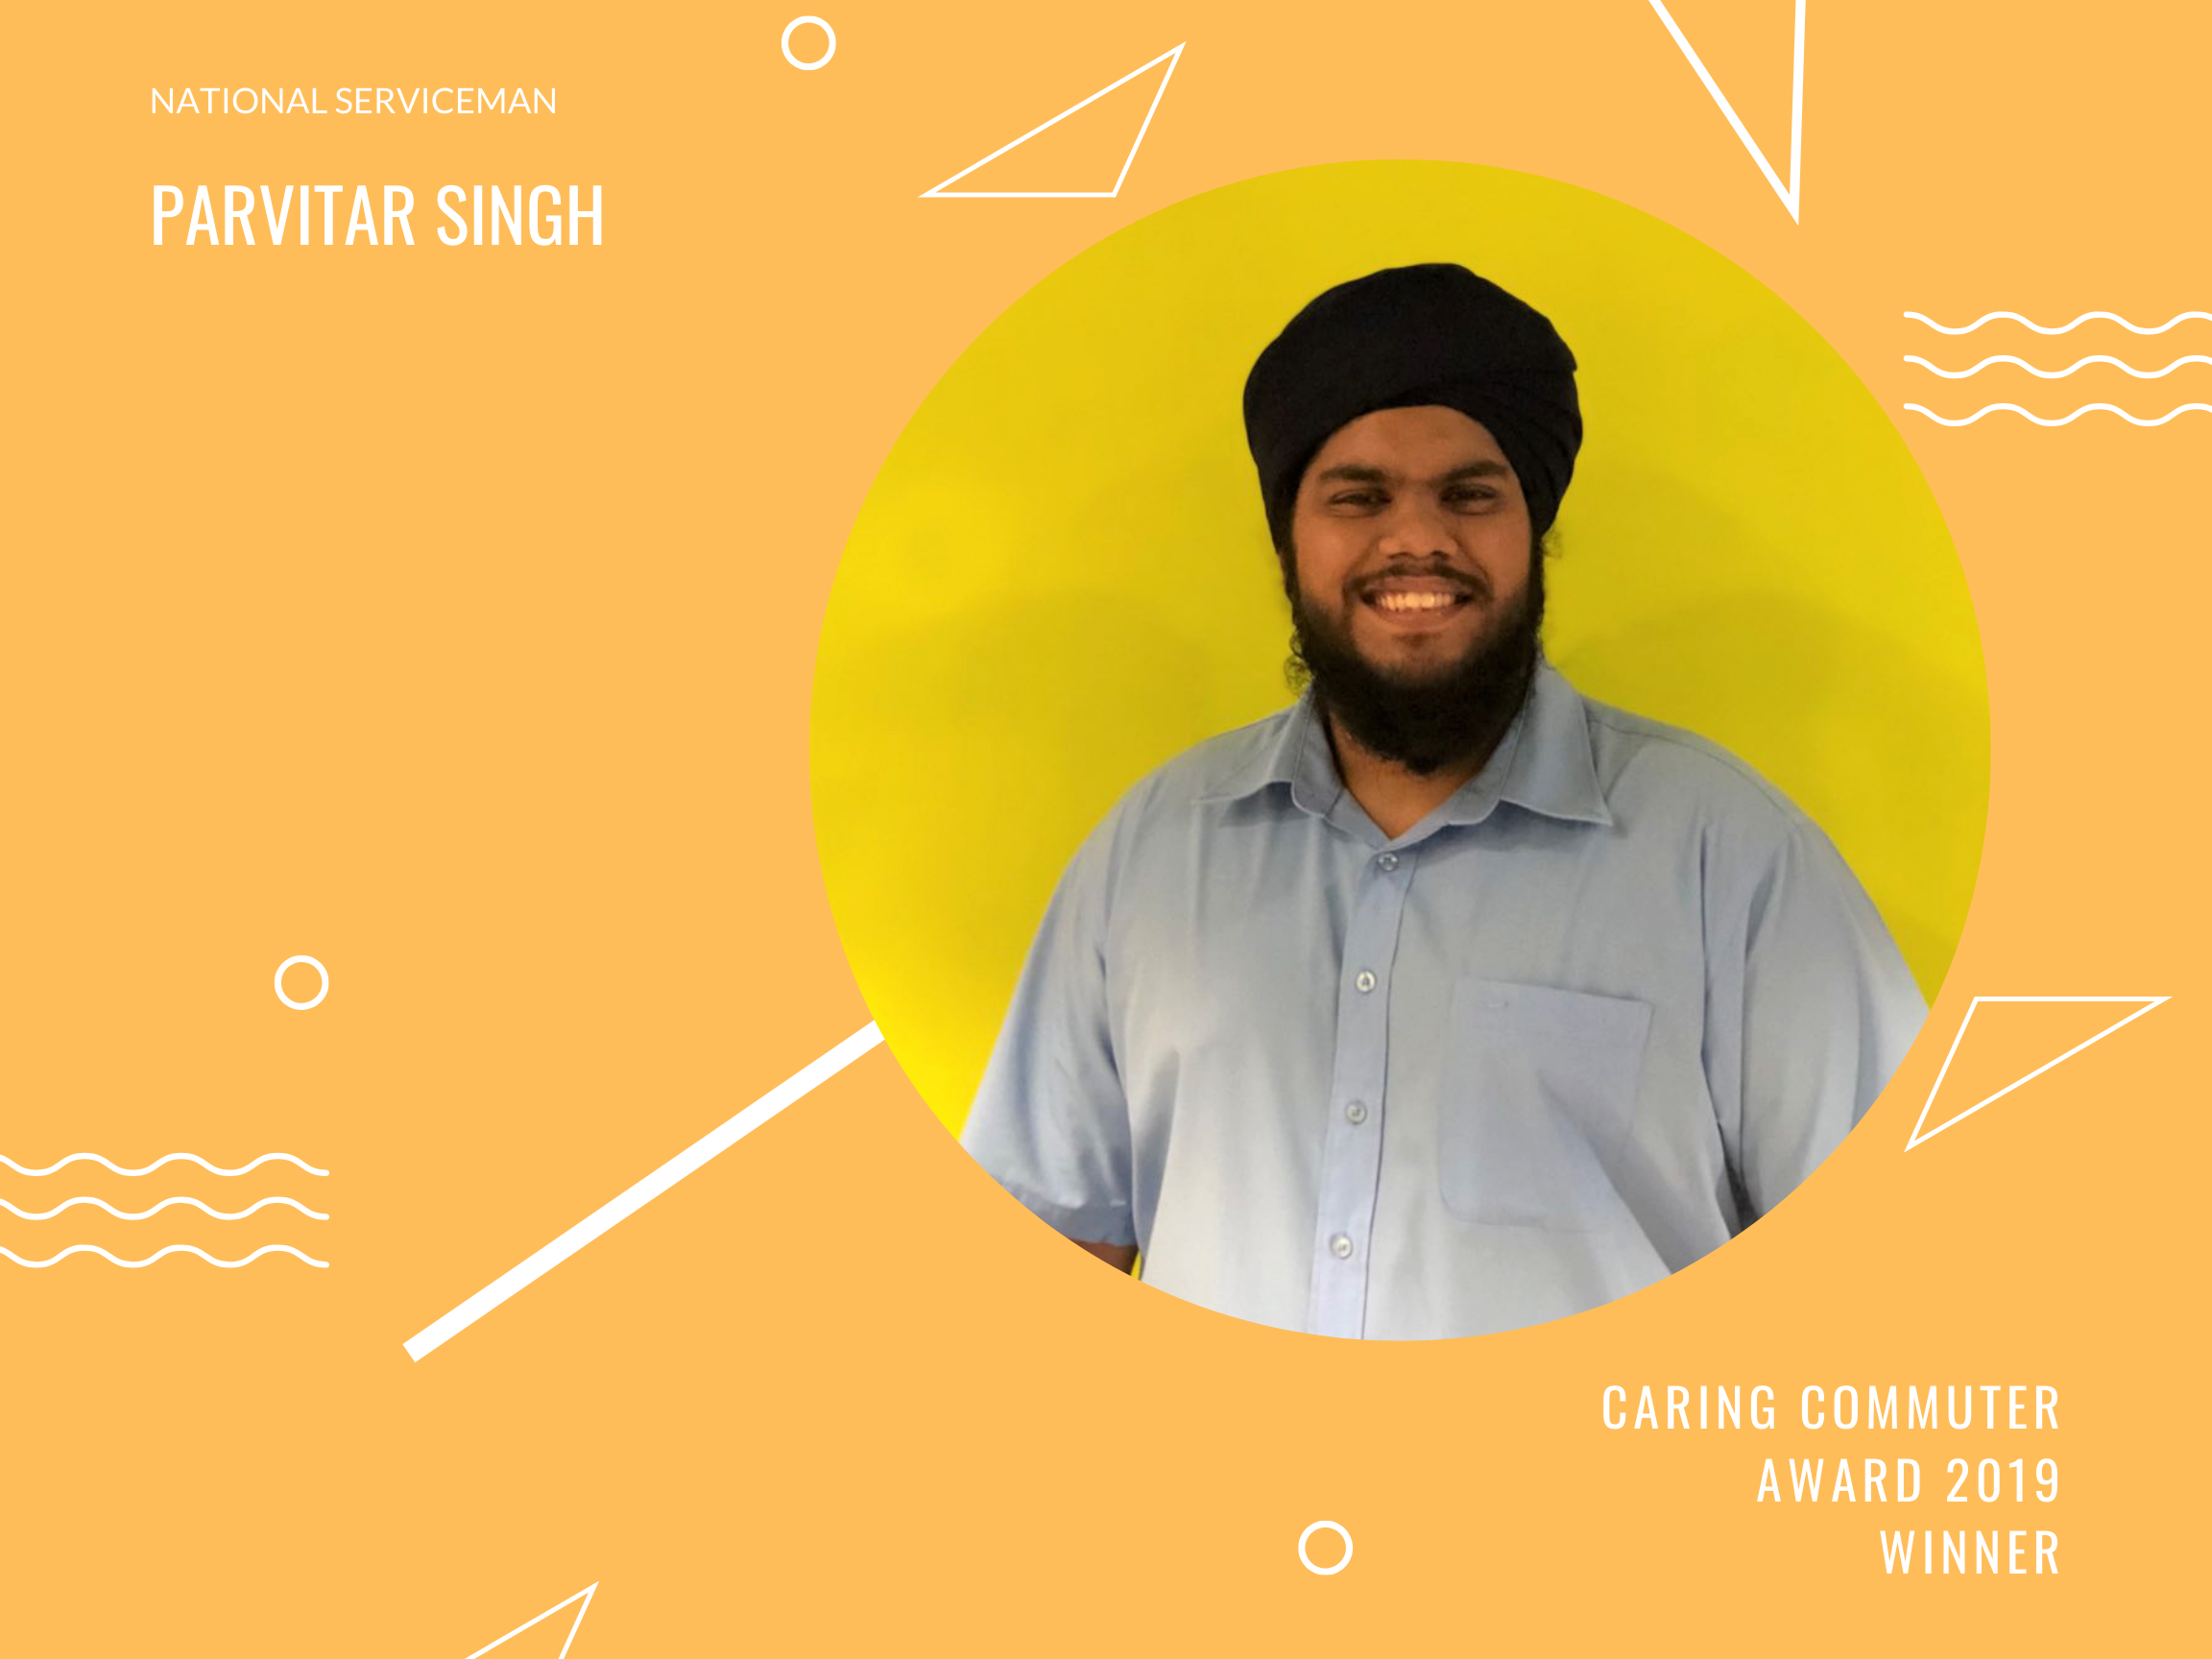 Meet Parvitar Singh, National Serviceman and Caring Commuter Award 2019 Winner